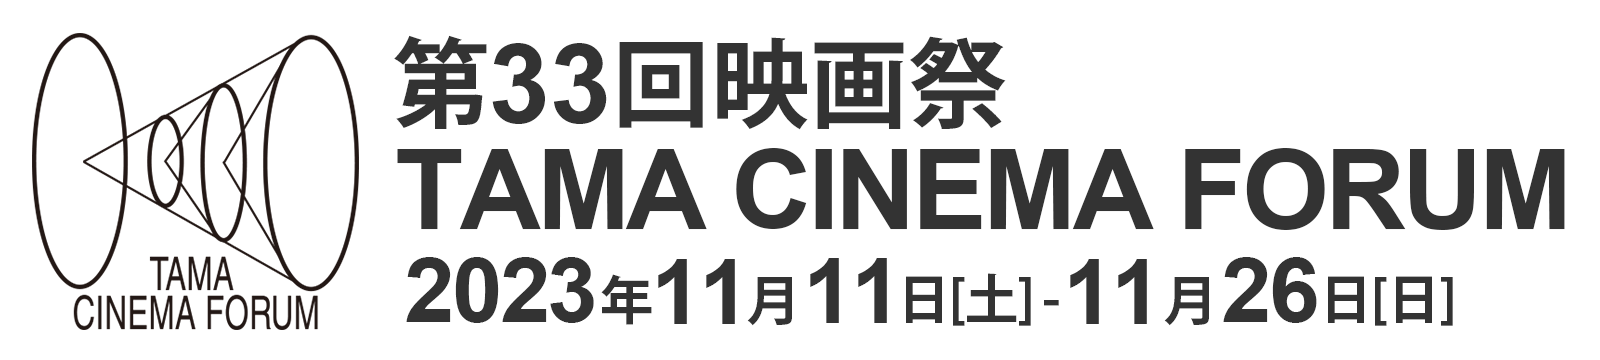 映画祭TAMA CINEMA FORUM | TAMA映画フォーラム実行委員会